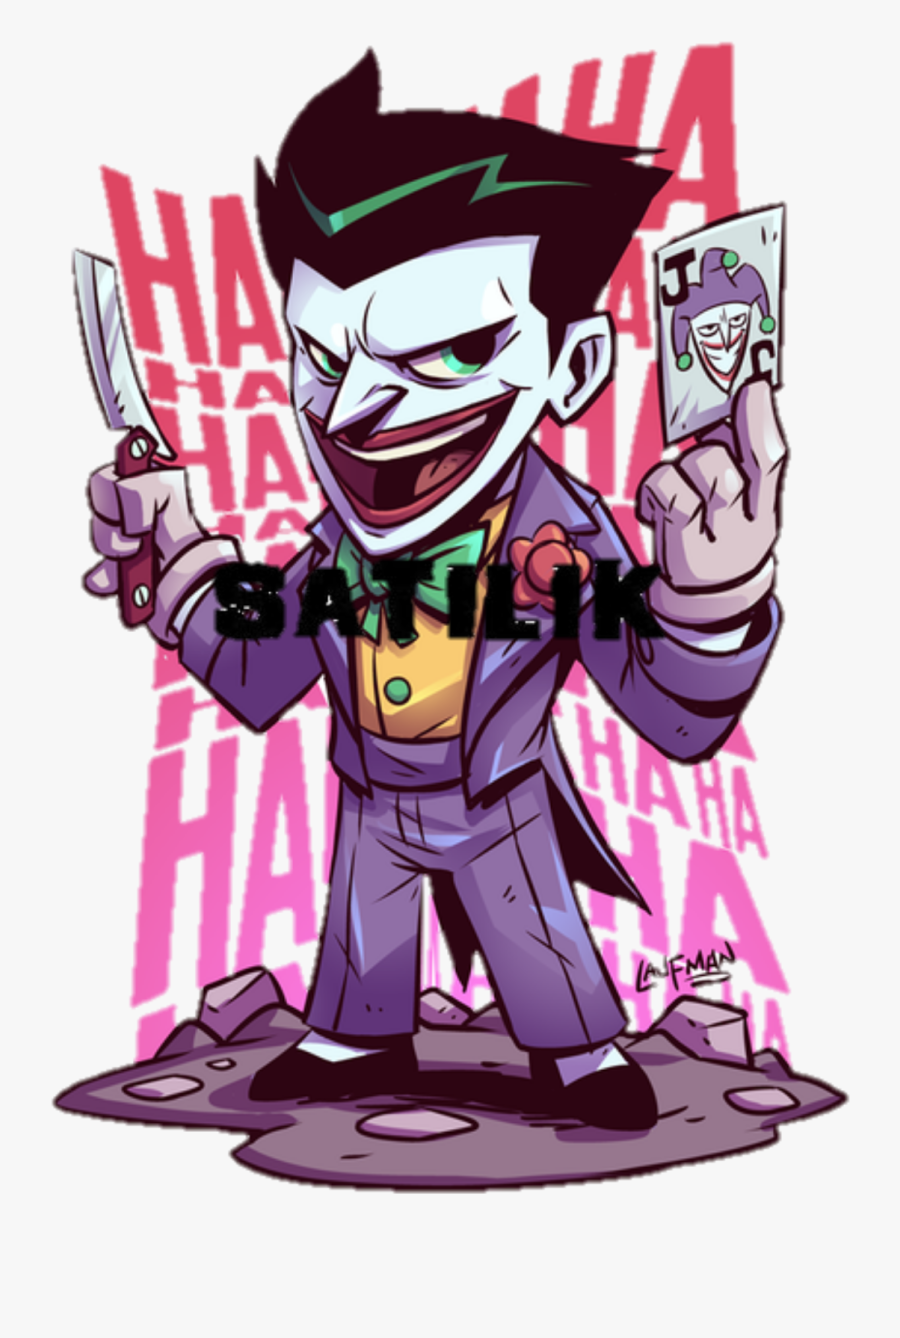 Transparent The Joker Clipart - Derek Laufman Joker, Transparent Clipart